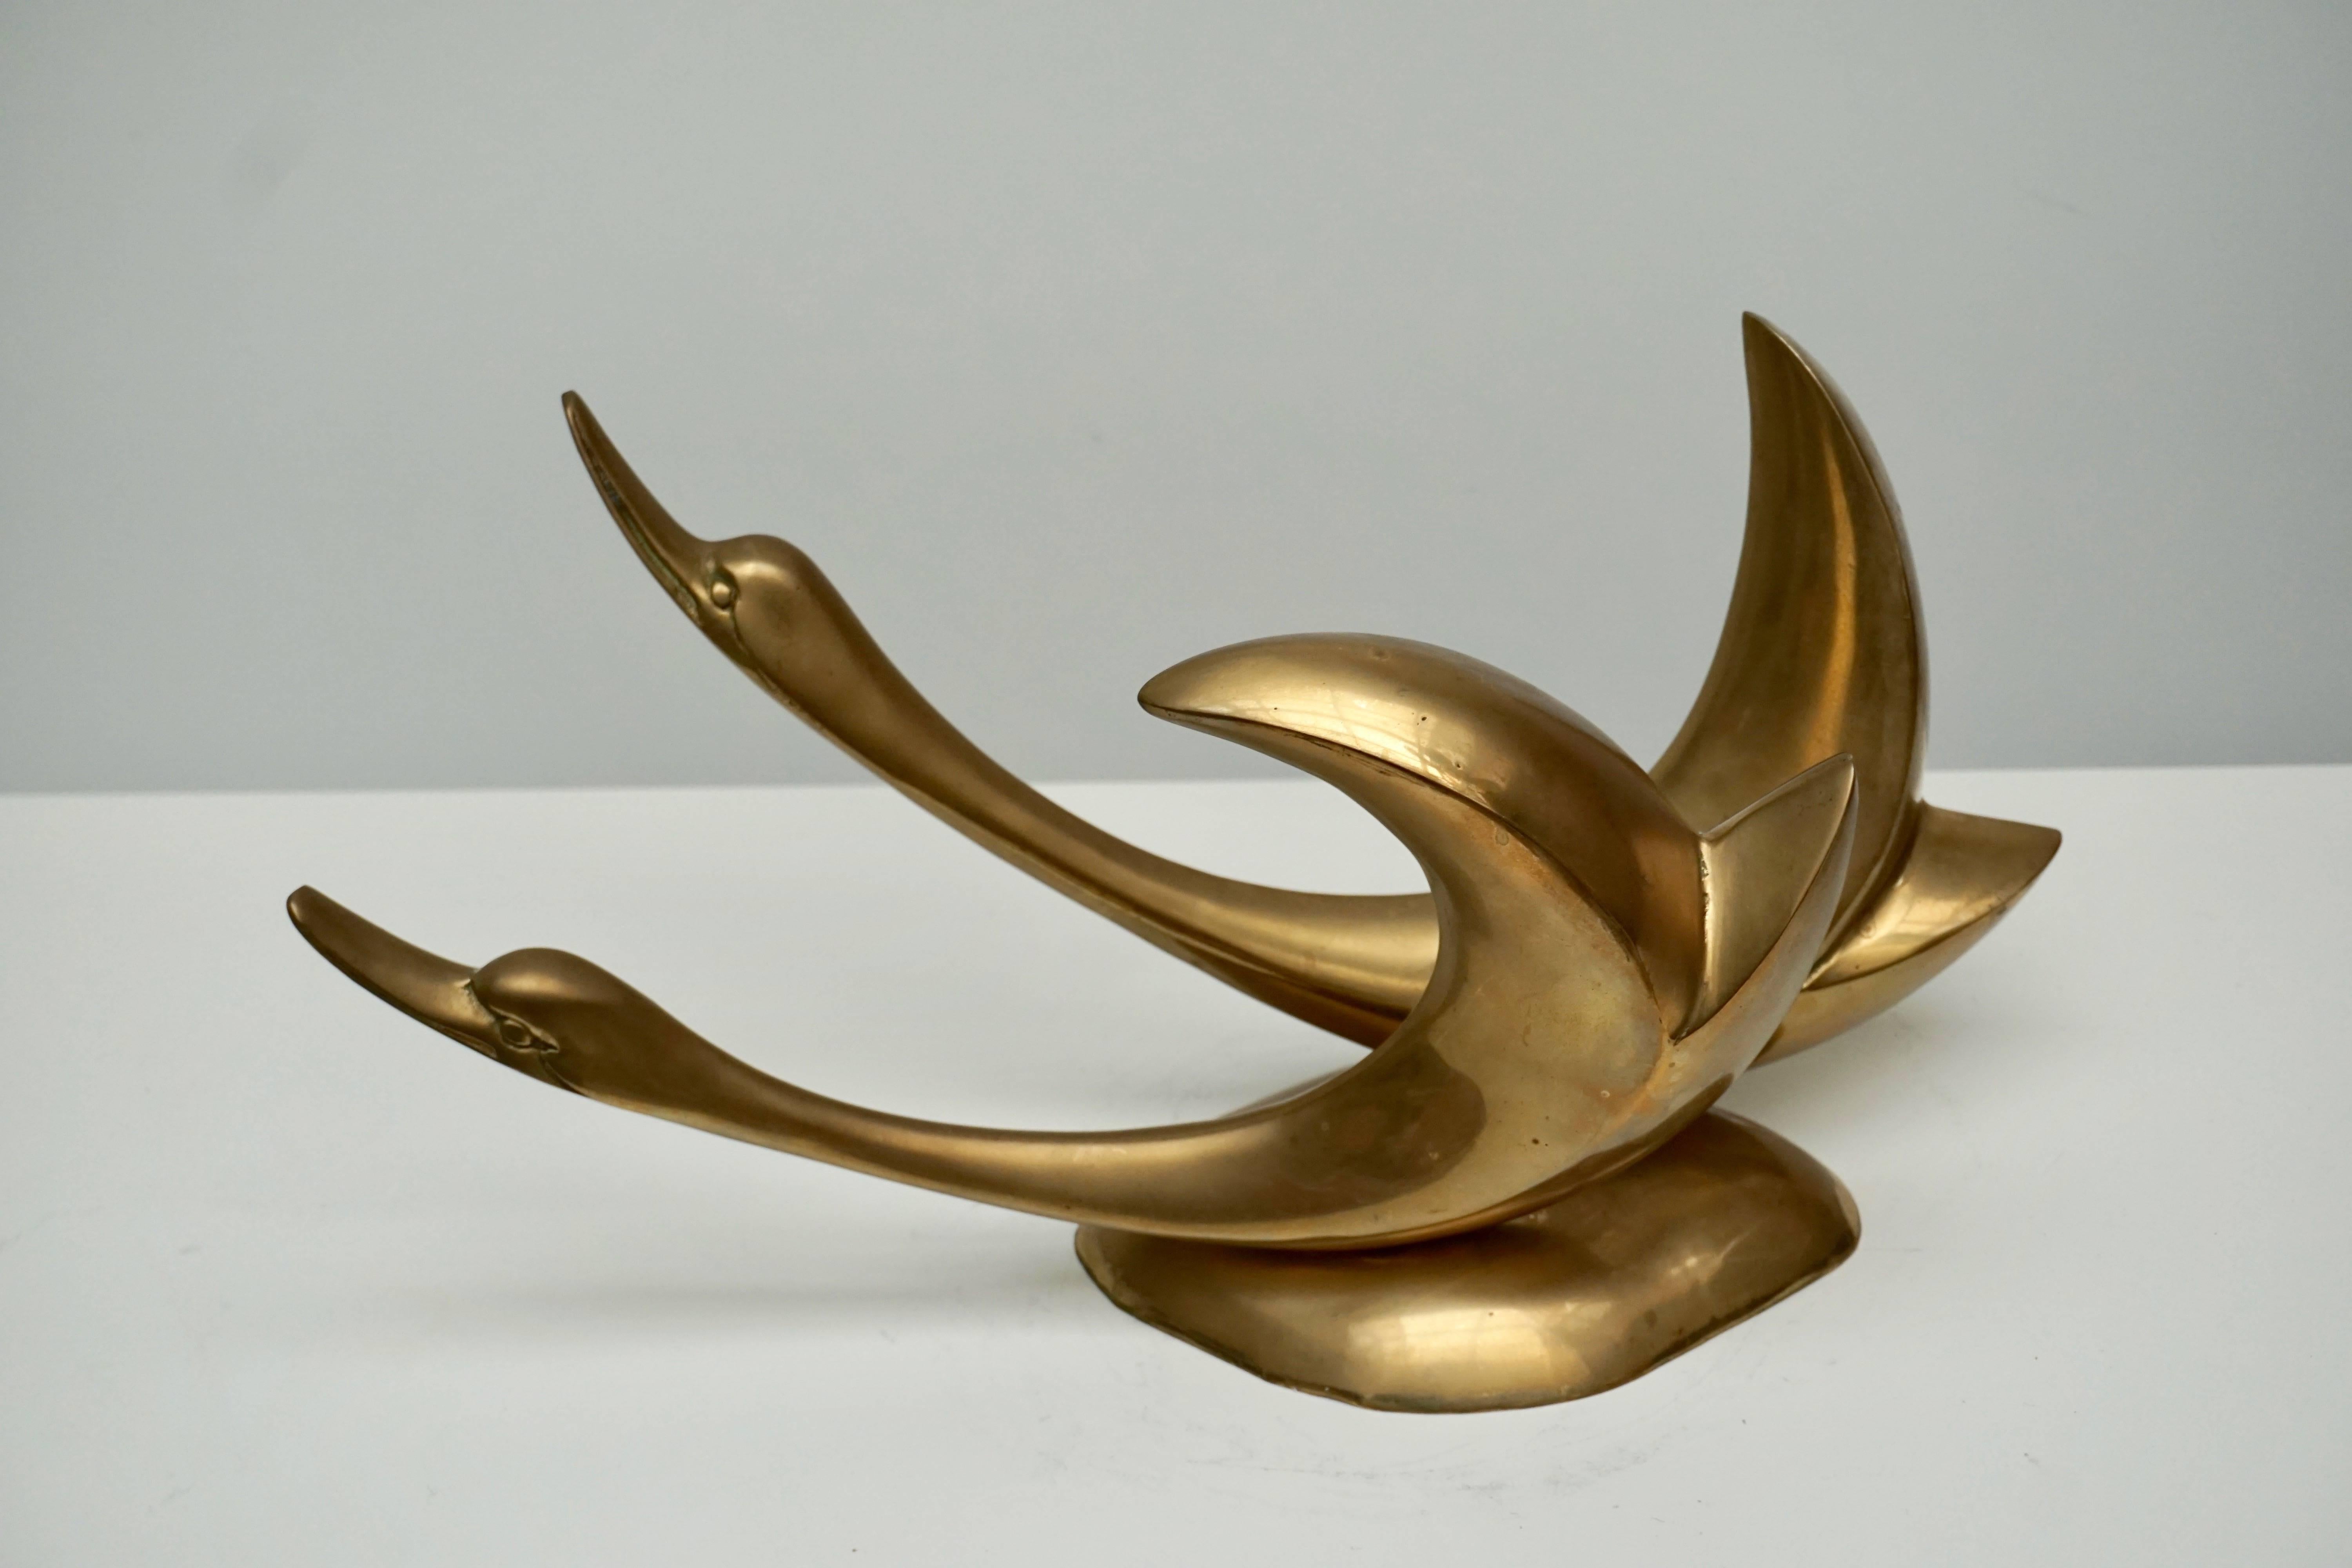 Brass bird sculpture.
Measures: Width 42 cm.
Height 20 cm.
Depth 18 cm.
Weight 2 kg.